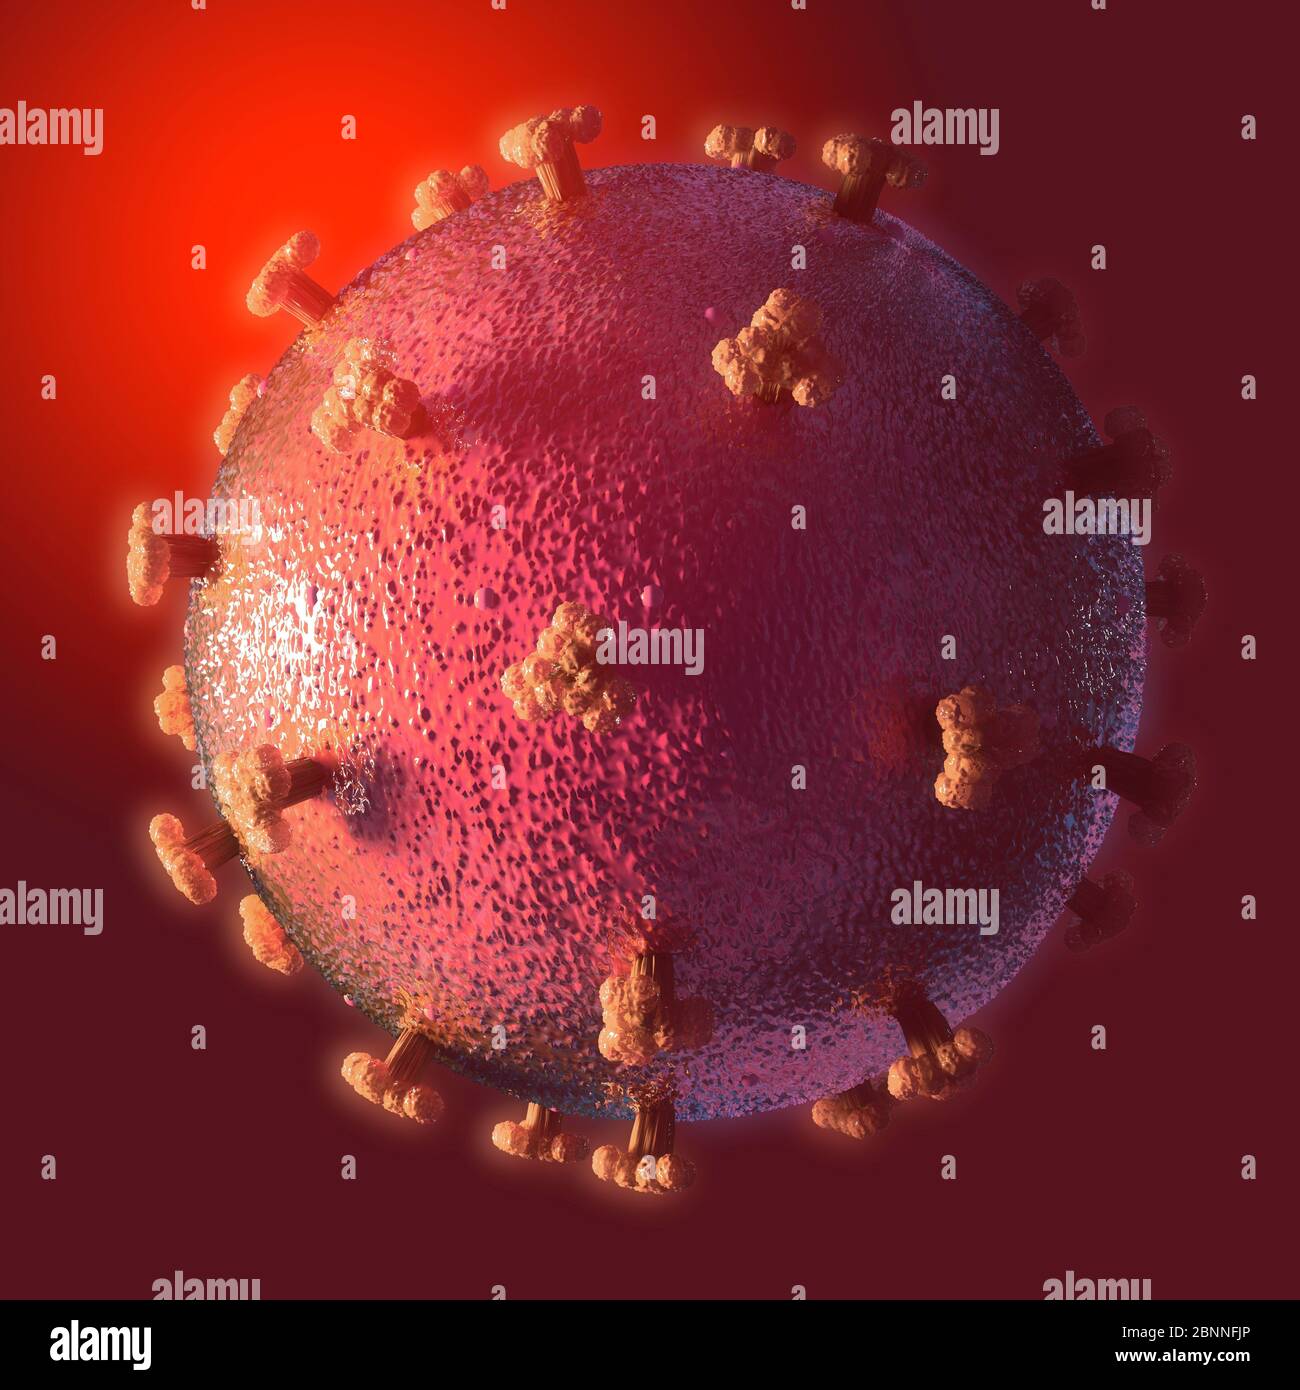 Illustrazione di un coronavirus, la causa della nuova malattia covid-19. Questa malattia è stata scoperta per la prima volta a Wuhan, in Cina, nel dicembre 2019. E' contagiosa e da allora si è diffusa rapidamente in tutto il mondo. La malattia causa febbre, tosse e respiro corto, e può portare a polmonite fatale in alcuni casi. SARS-COV-2 è un virus RNA che utilizza picchi proteici per ottenere l'ingresso nelle cellule ospiti. Foto Stock